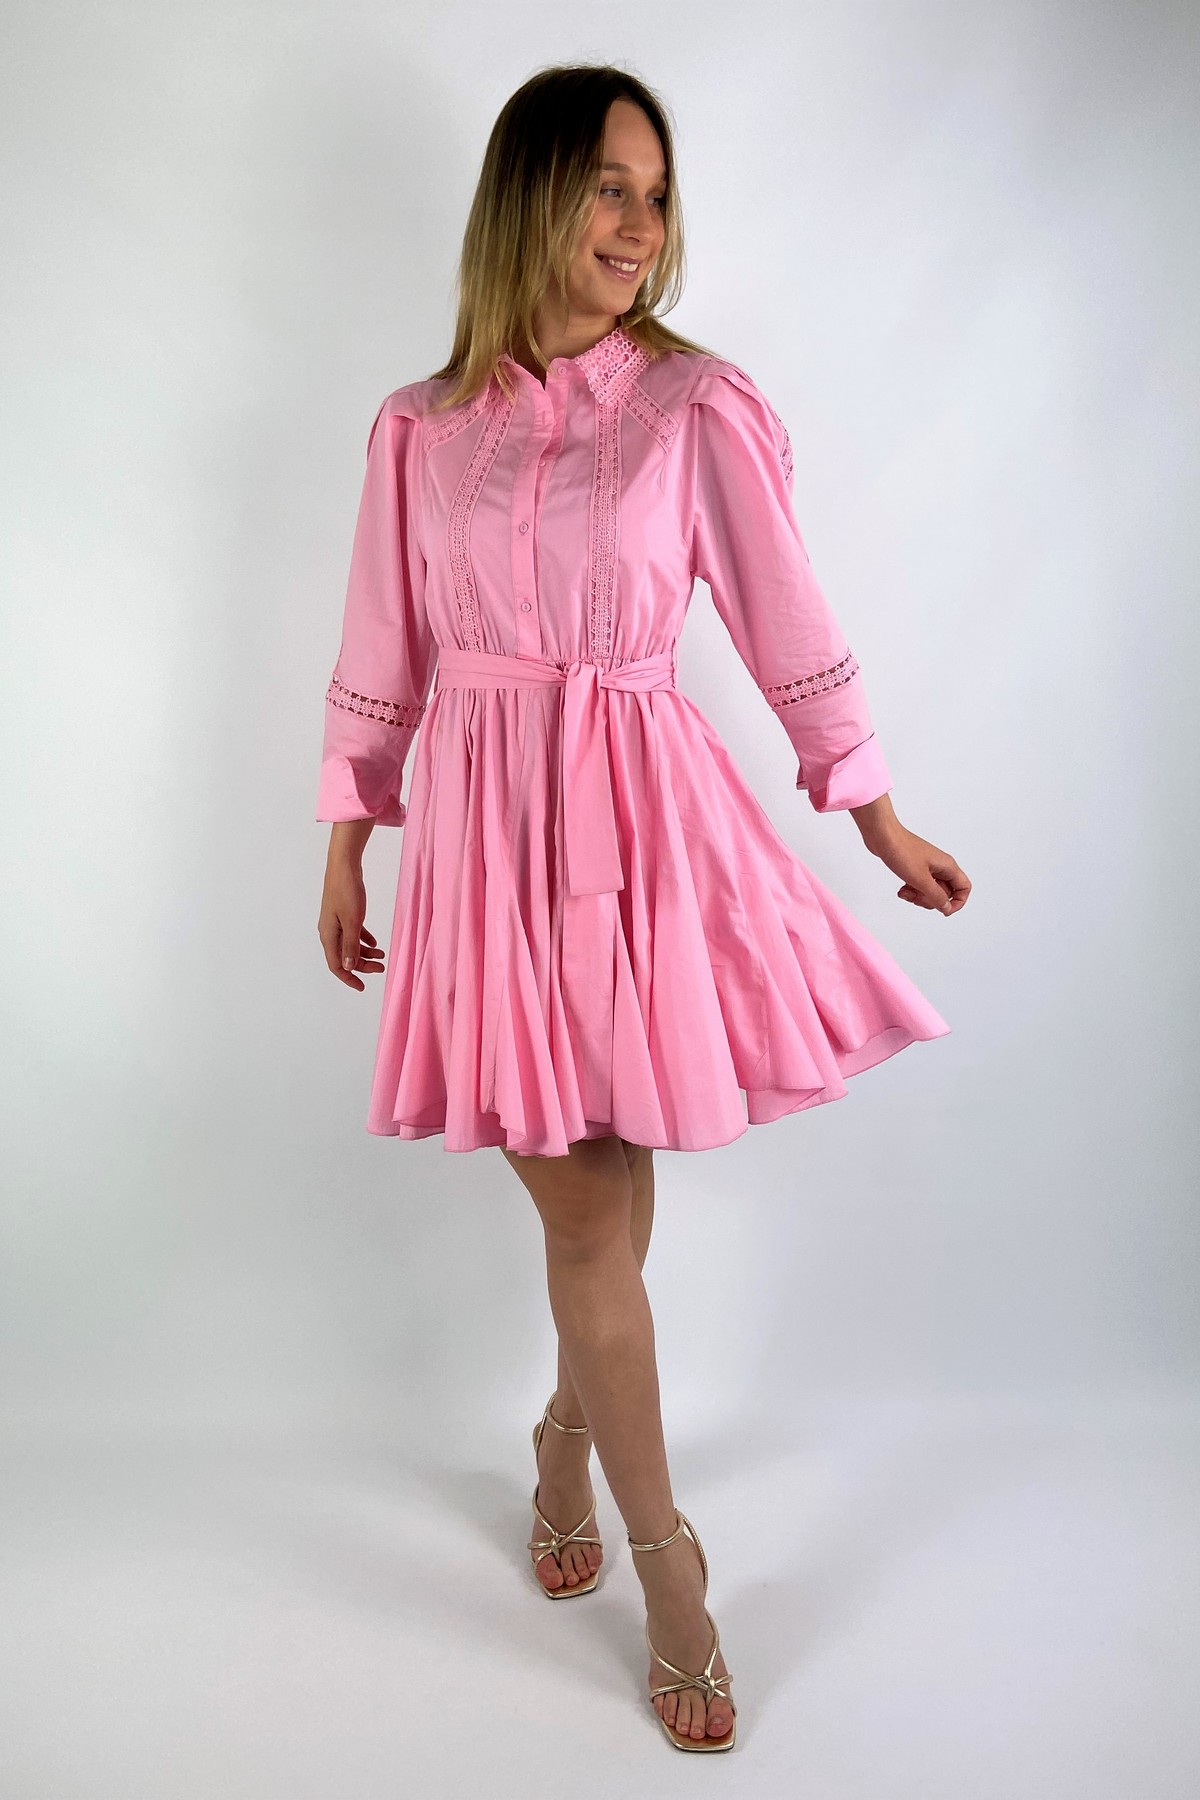 Kleed kant stripes in de kleur roze van het merk Dreamcatcher